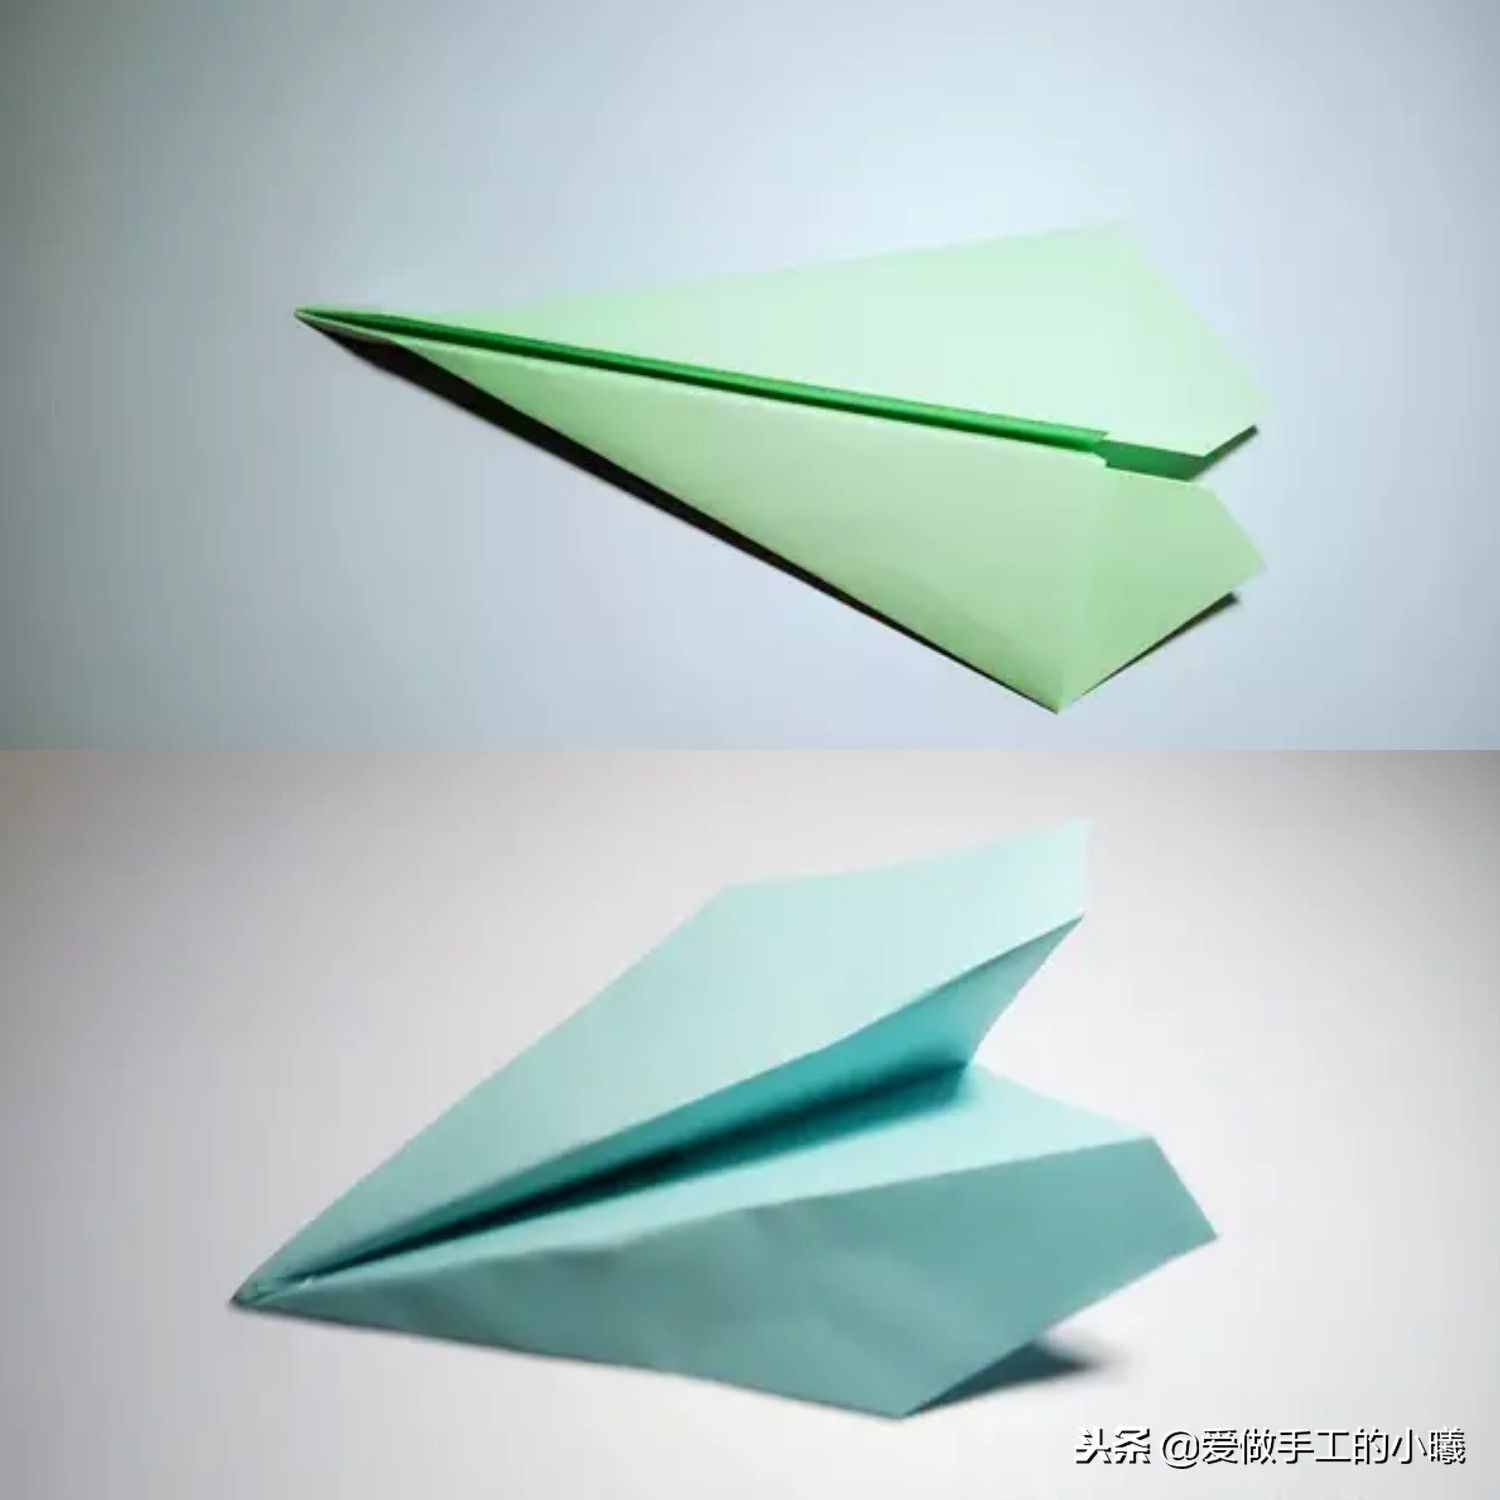 纸飞机简单教程